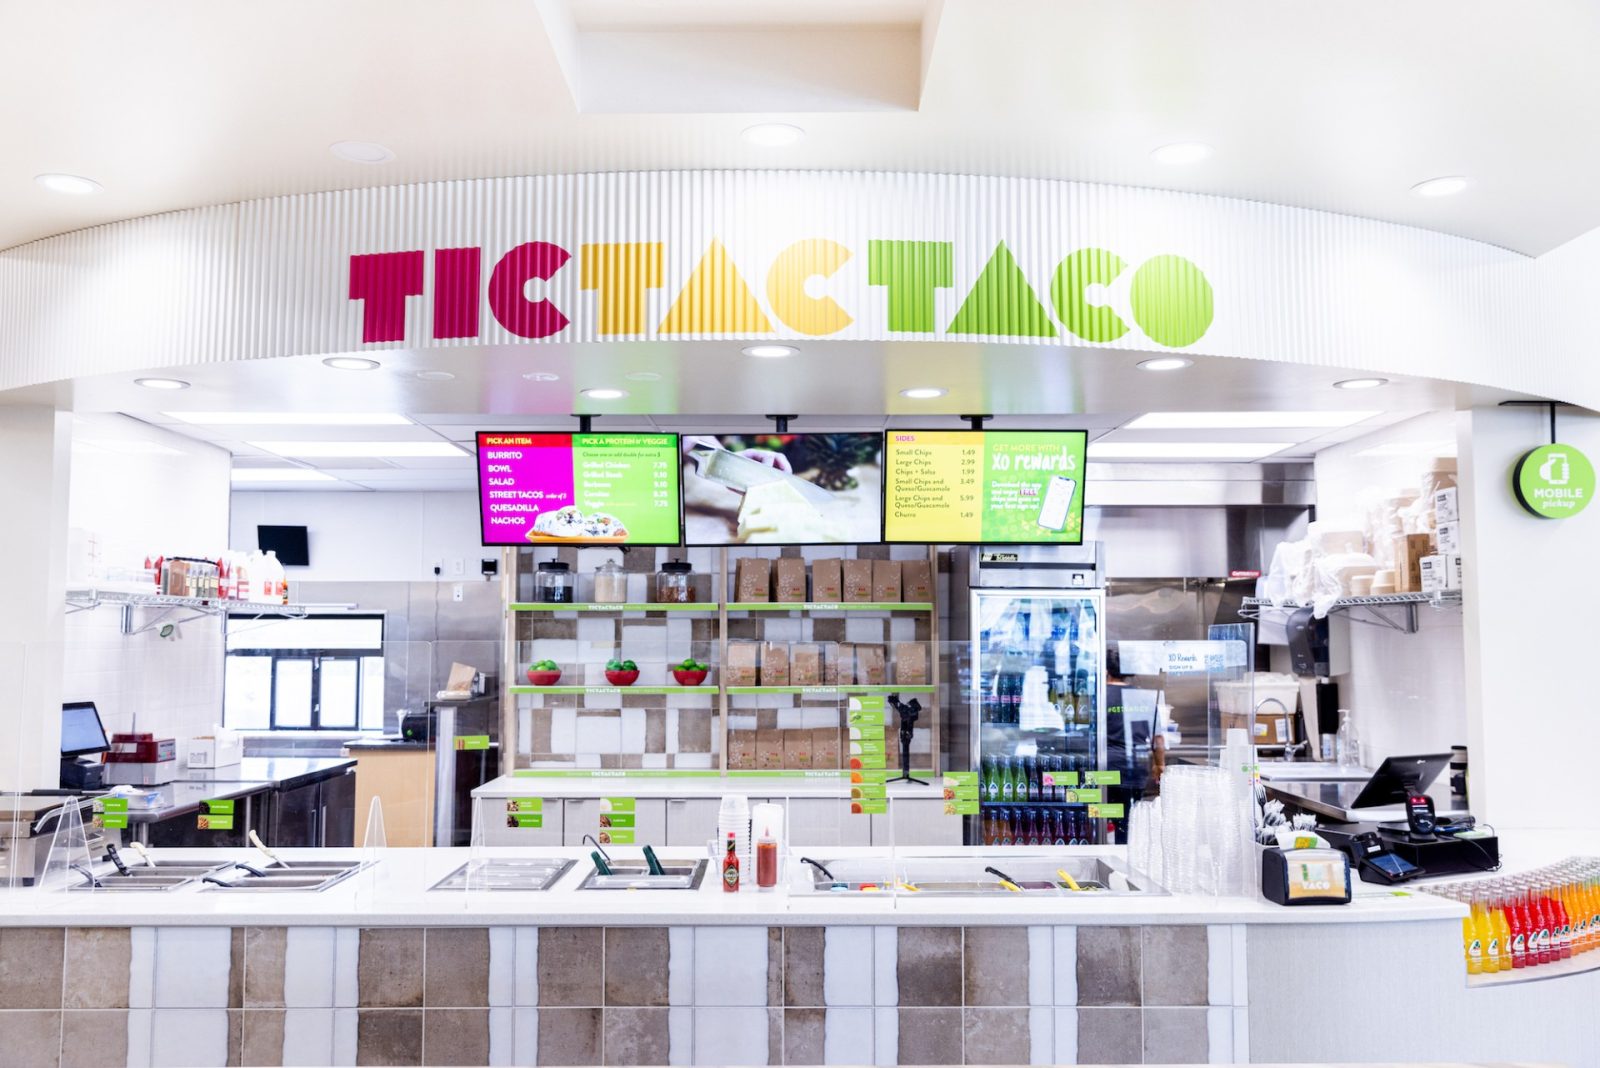 O'Taco Tac